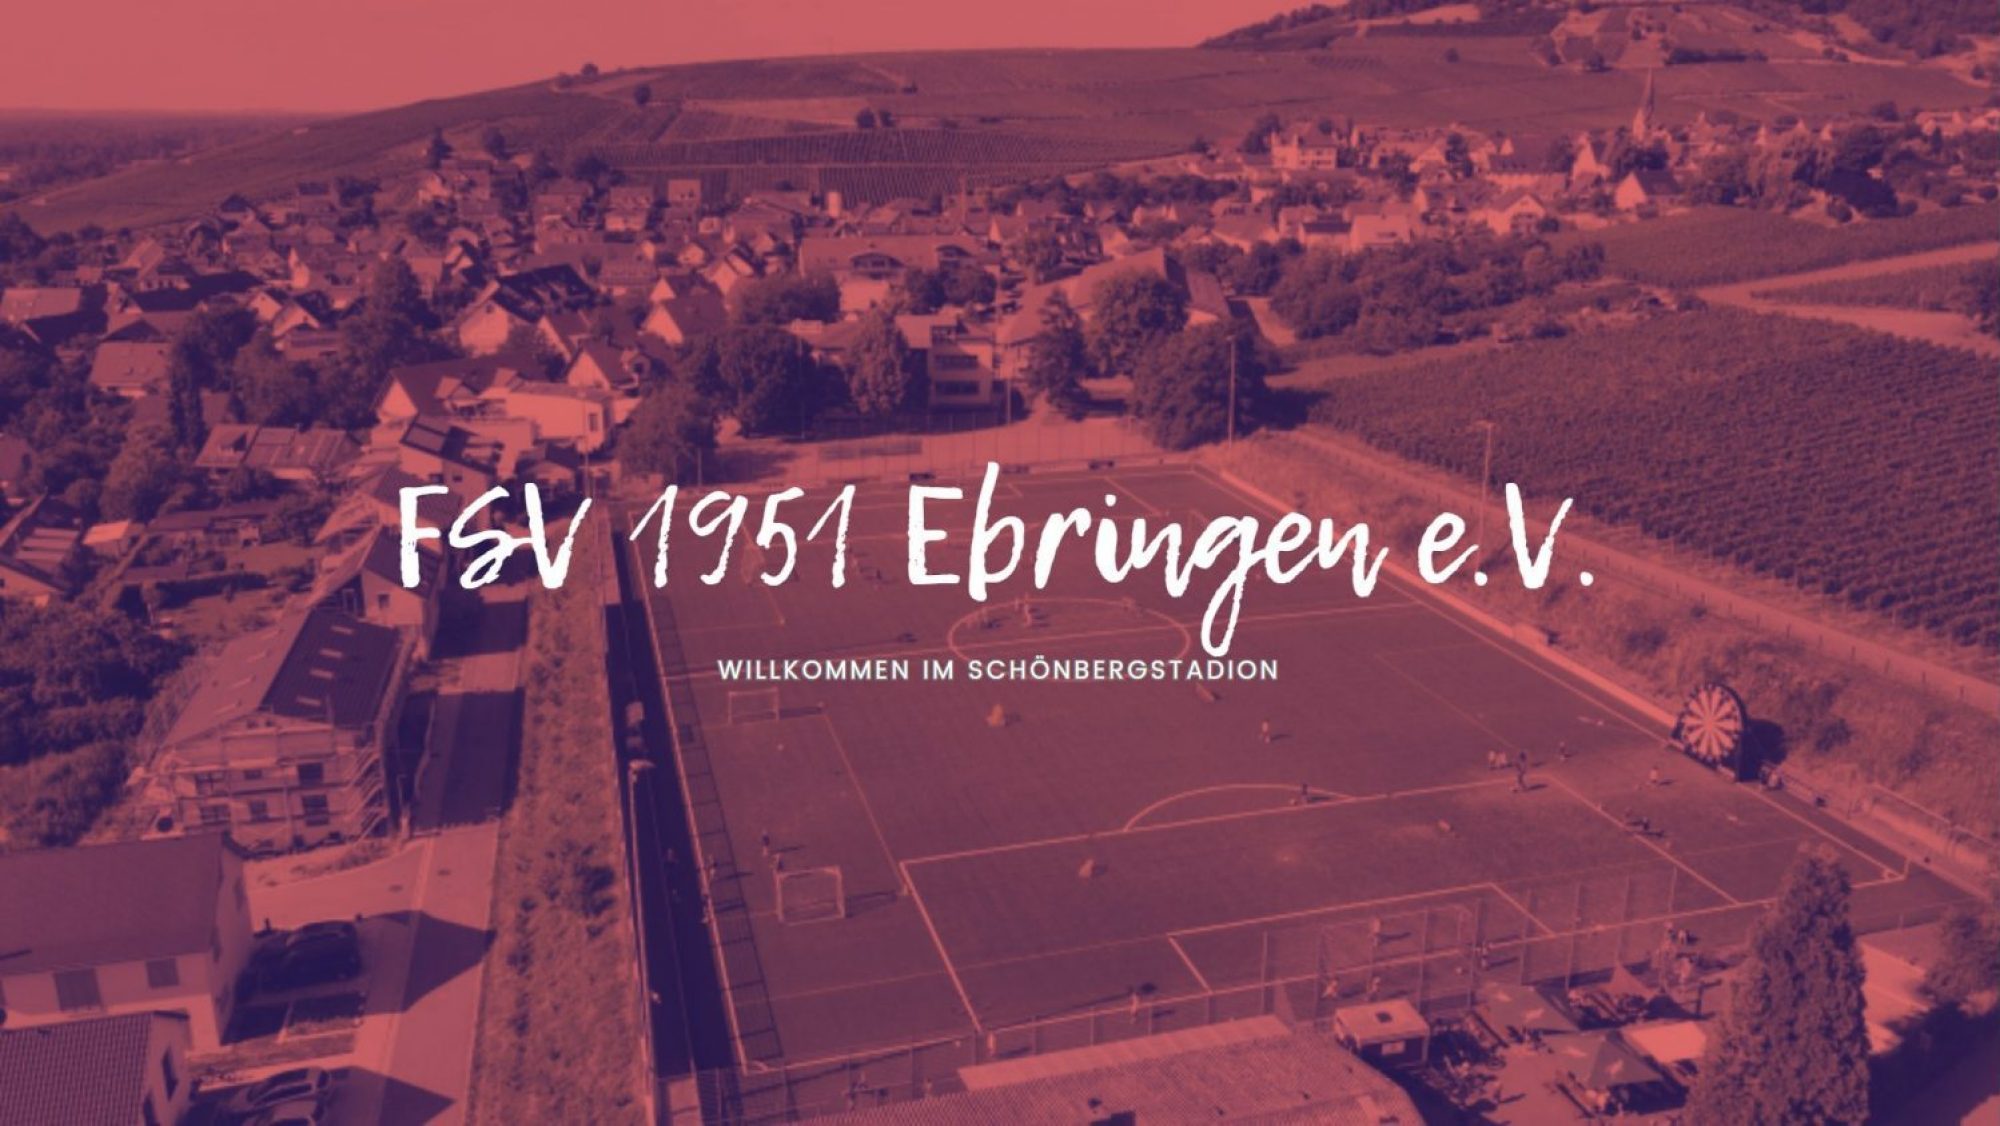 FSV 1951 Ebringen eV